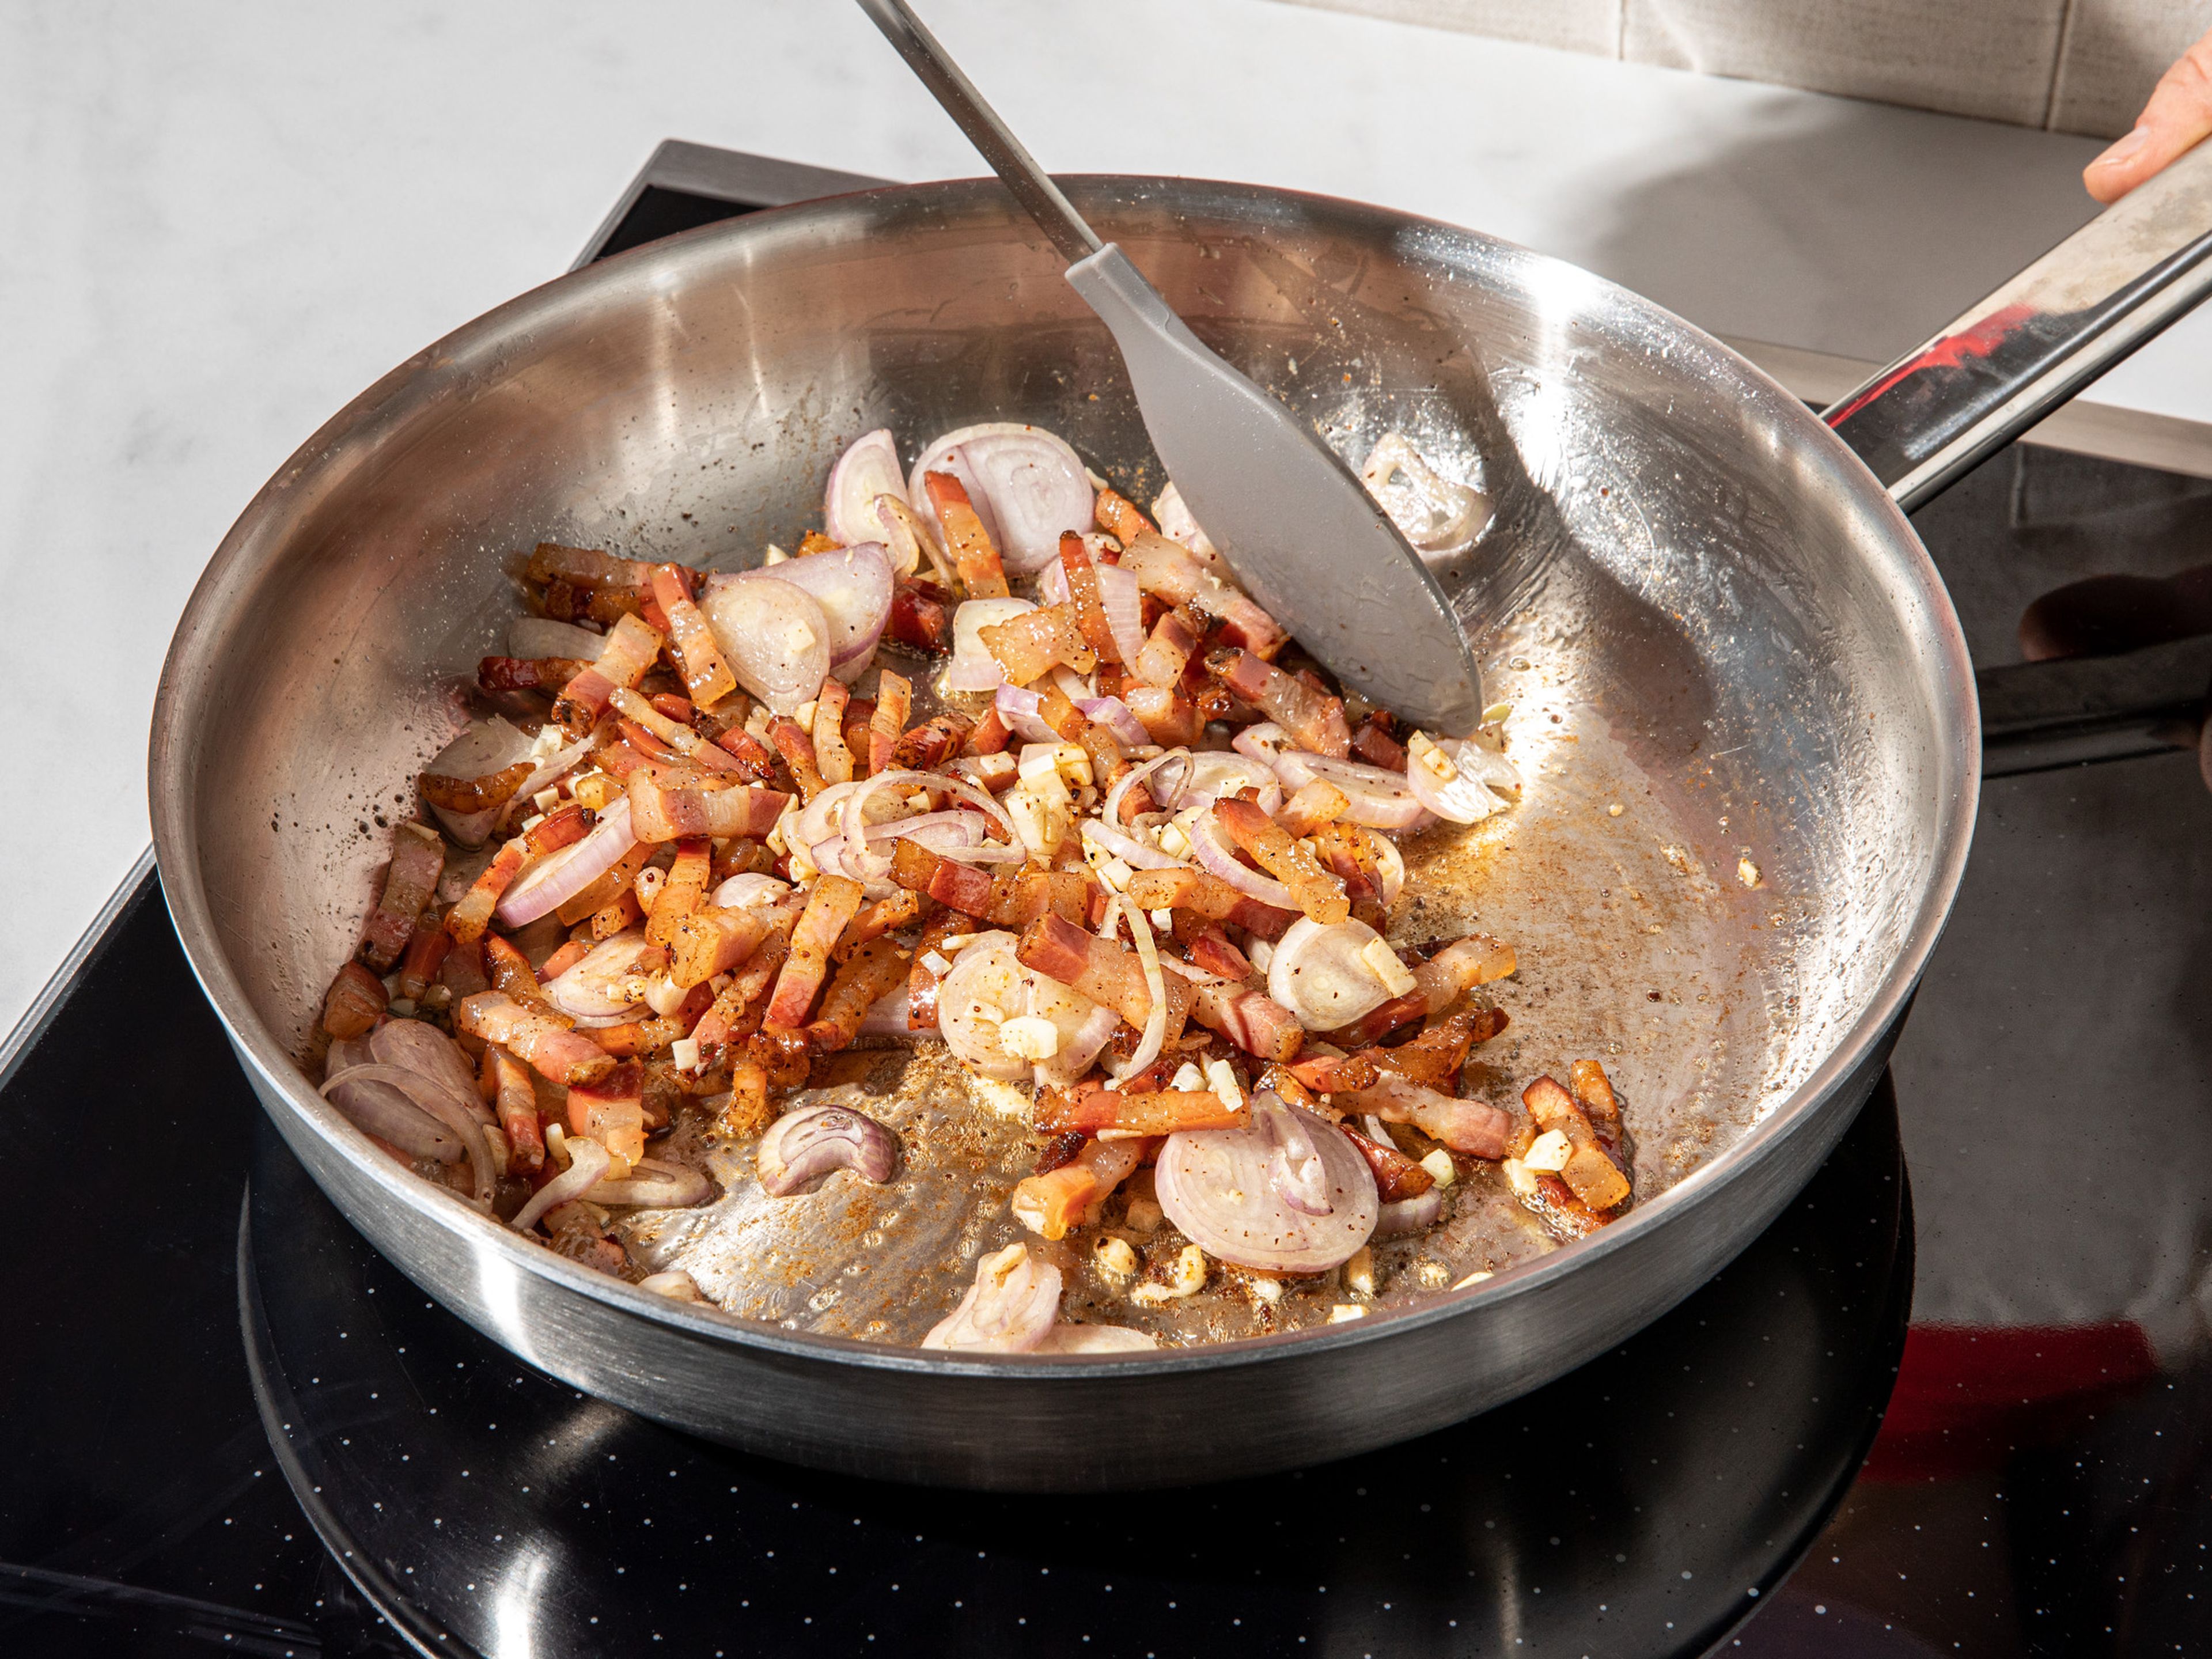 Pancetta mit etwas Olivenöl in eine Pfanne geben und braten, bis das Fett transparent und weich wird, ca. 5 Min.. Schalotten, Knoblauch und Chili dazugeben und bei mittlerer Hitze weiterbraten, bis sie glasig werden. Großzügig mit schwarzem Pfeffer würzen. Tomaten aus der Dose und unsere PASTA MAGIE GEWÜRZMISCHUNG (falls verwendet) dazugeben und bei mittlerer Hitze ca. 10 Min. köcheln lassen. Währenddessen die Rigatoni nach Packungsanleitung kochen. Rigatoni abgießen und dabei etwas Kochwasser für die Soße auffangen.